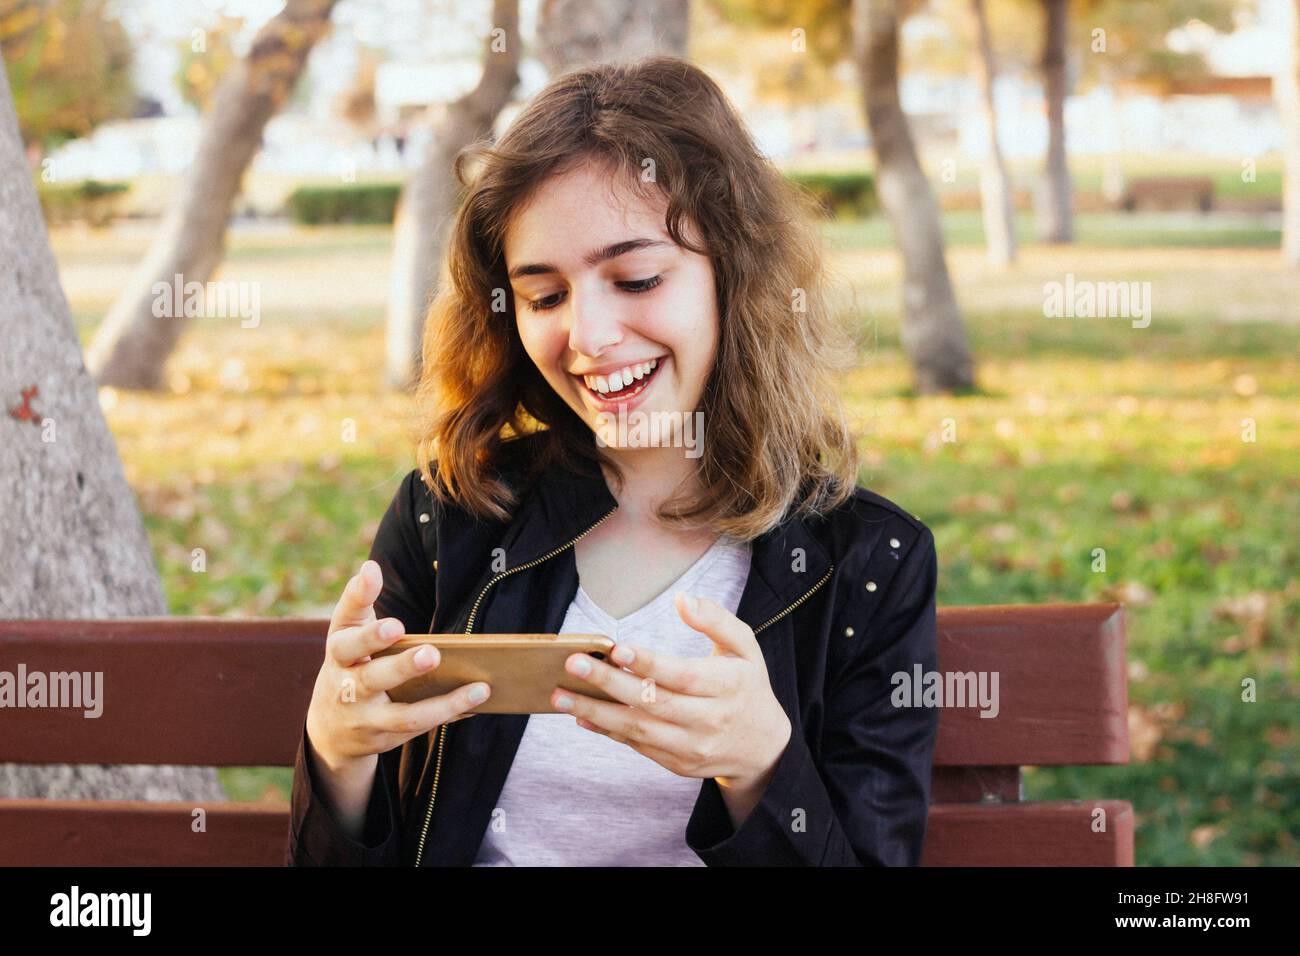 Ragazza sorridente felice che chiacchiera con gli amici tramite videochiamata sullo smartphone. Foto Stock